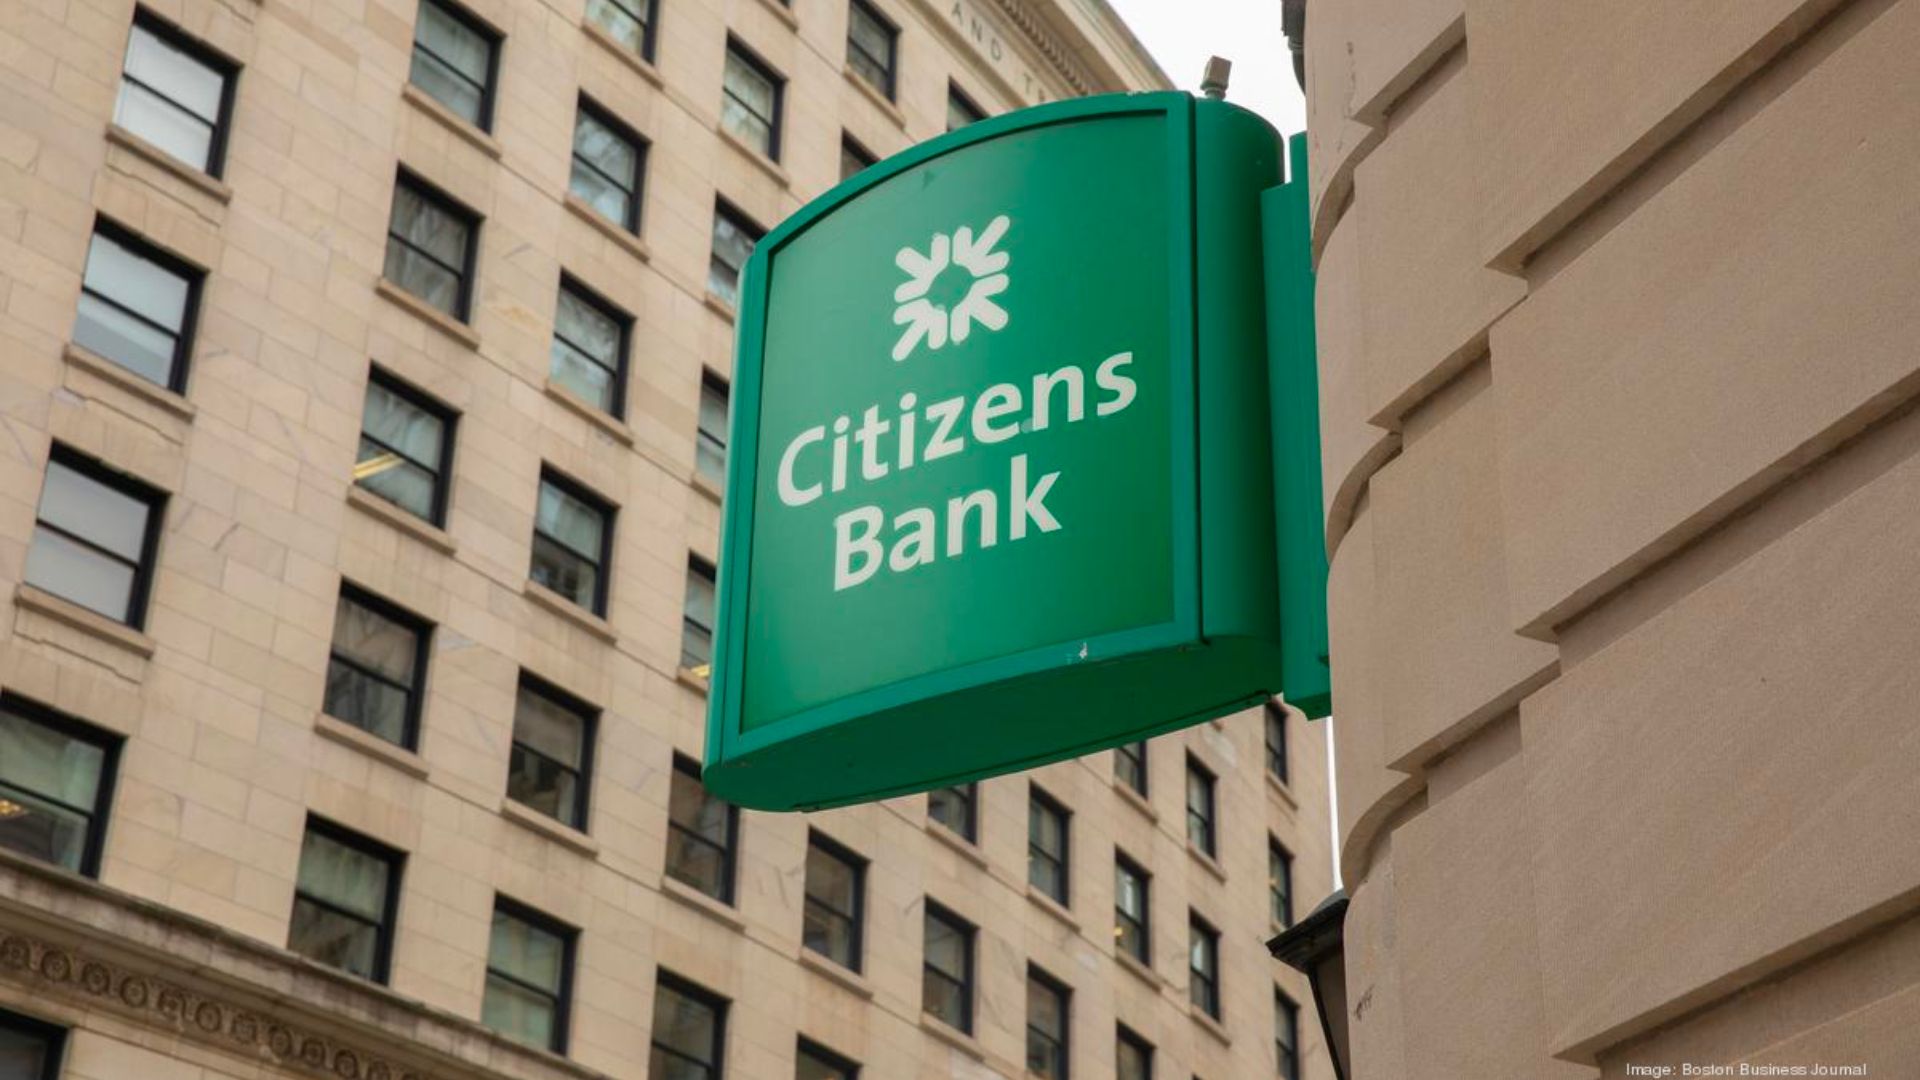 Citizens bank.jpeg